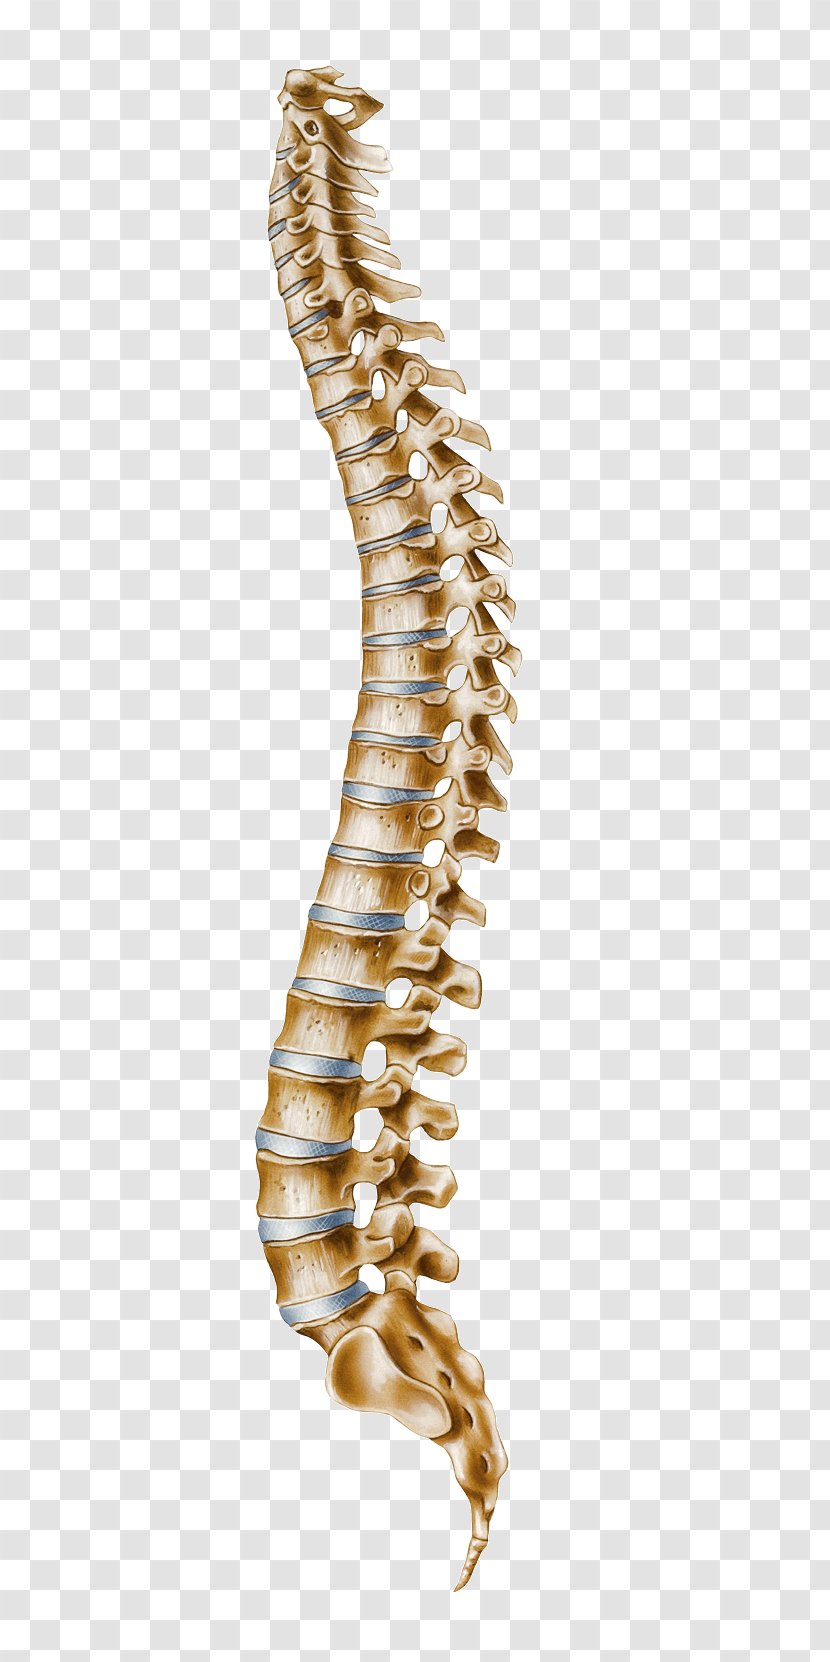 Human Vertebral Column Atlas Cervical Vertebrae - Spine Transparent PNG